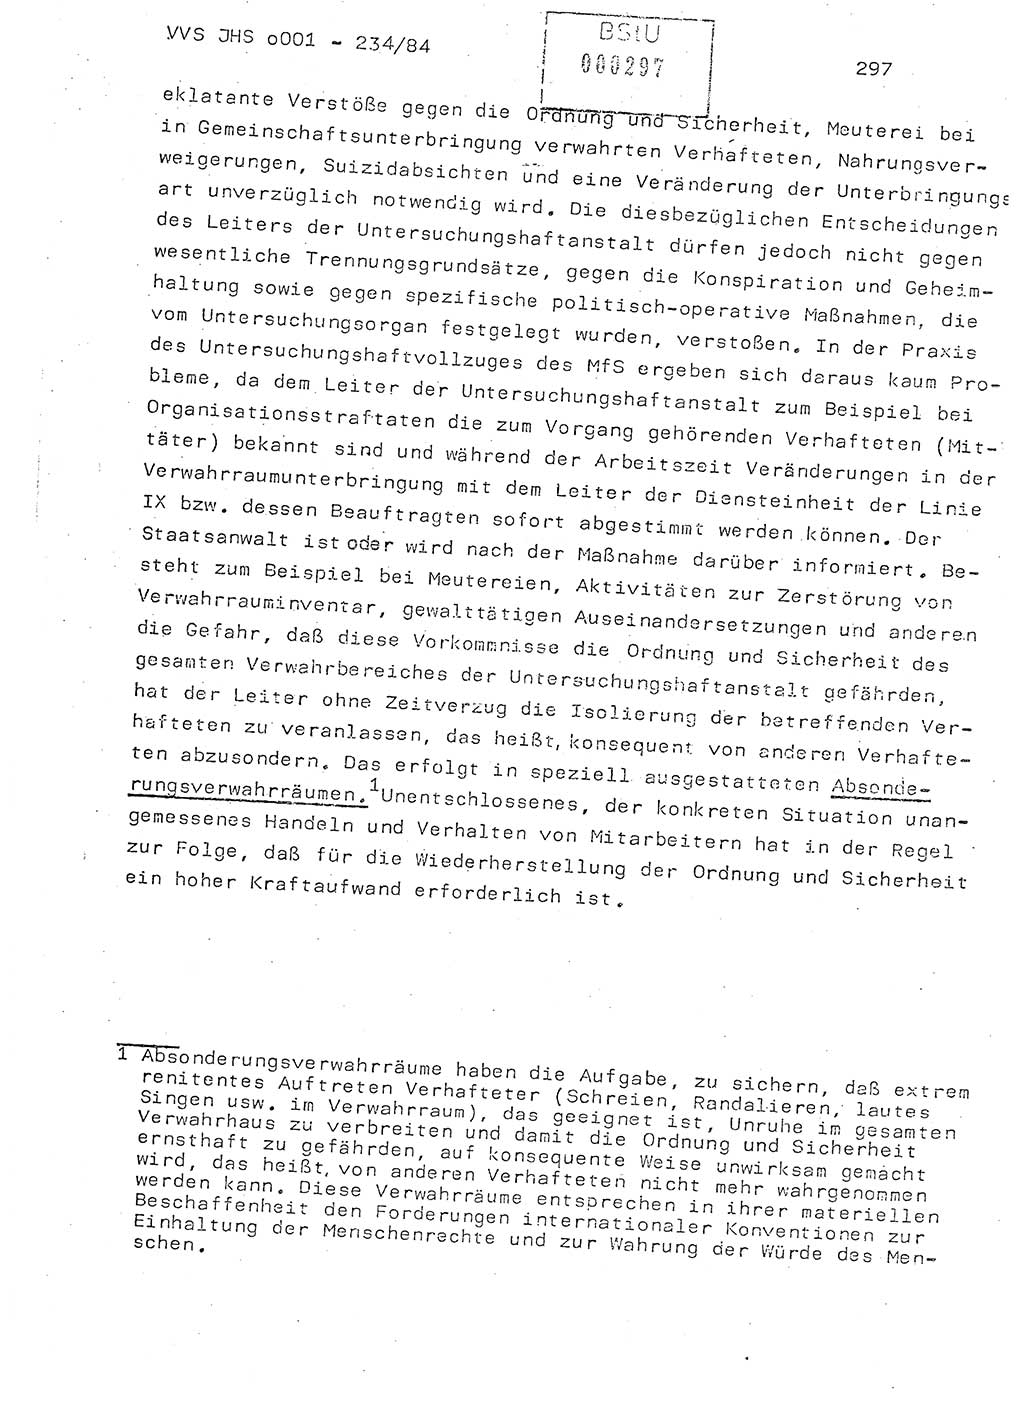 Dissertation Oberst Siegfried Rataizick (Abt. ⅩⅣ), Oberstleutnant Volkmar Heinz (Abt. ⅩⅣ), Oberstleutnant Werner Stein (HA Ⅸ), Hauptmann Heinz Conrad (JHS), Ministerium für Staatssicherheit (MfS) [Deutsche Demokratische Republik (DDR)], Juristische Hochschule (JHS), Vertrauliche Verschlußsache (VVS) o001-234/84, Potsdam 1984, Seite 297 (Diss. MfS DDR JHS VVS o001-234/84 1984, S. 297)